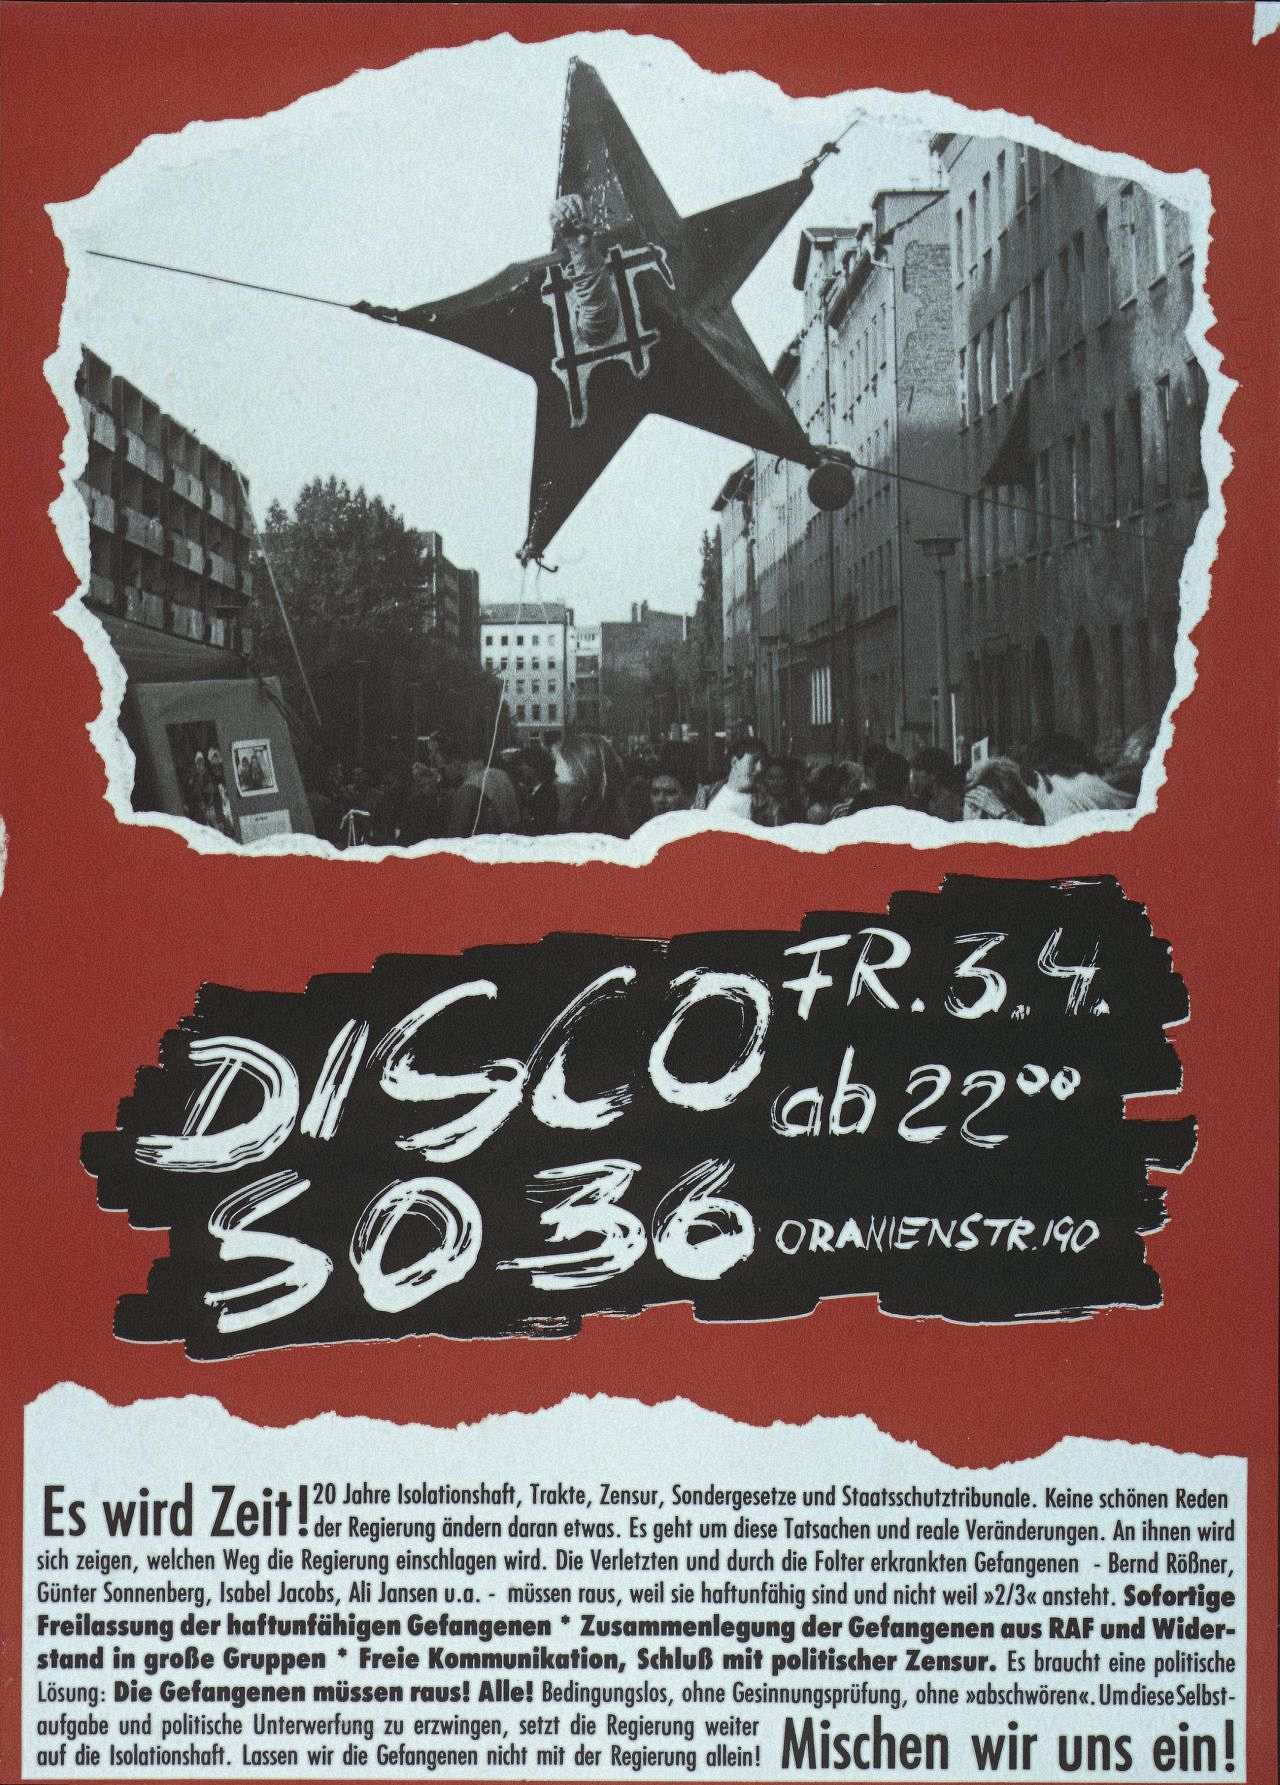 Roter Hintergrund, schwarz-weiße Abbildung: Hand ragt aus einem Stern mit Gitter, Text: Disco FR. 3.4. ab 22.00, Aufforderung Gefangene freizulassen oder zusammenzulegen.